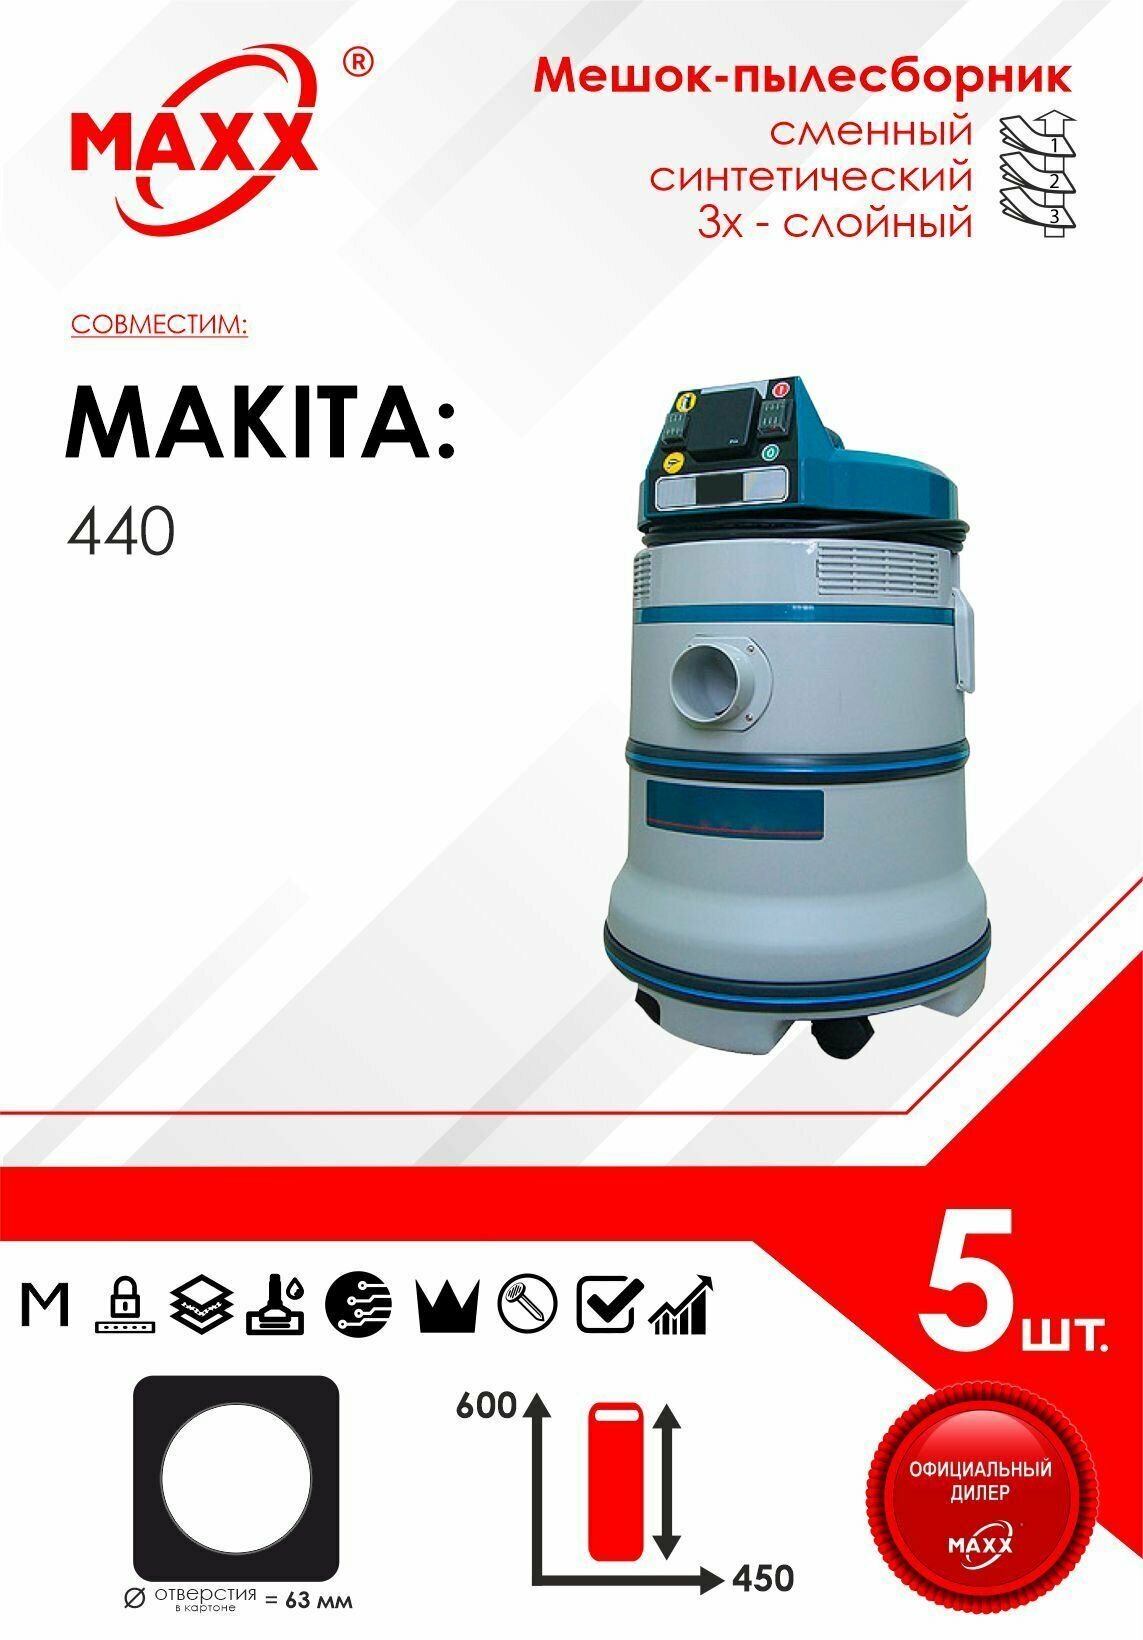 Мешок - пылесборник 5 шт. для пылесоса Makita 440